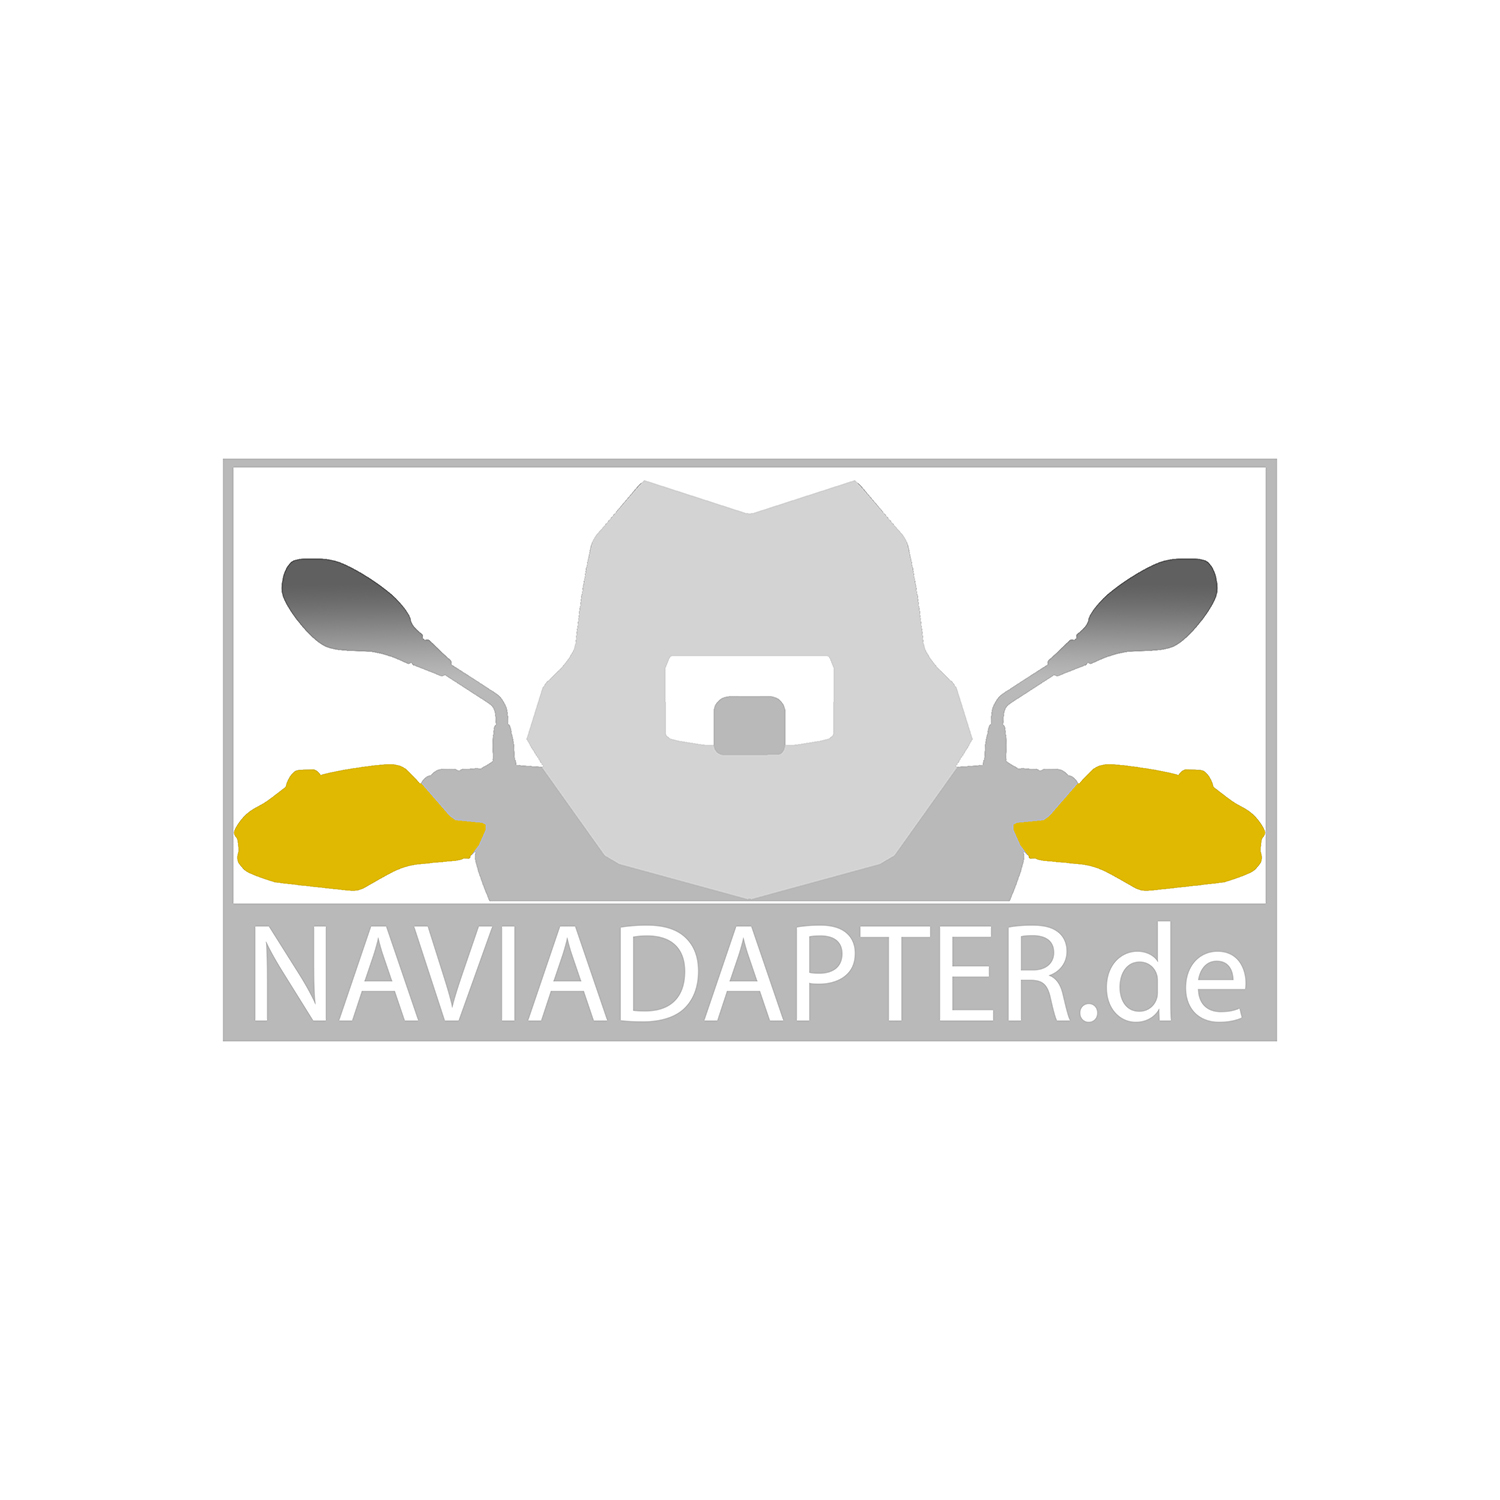 Naviadapter Logo quadratisch-klein.jpg